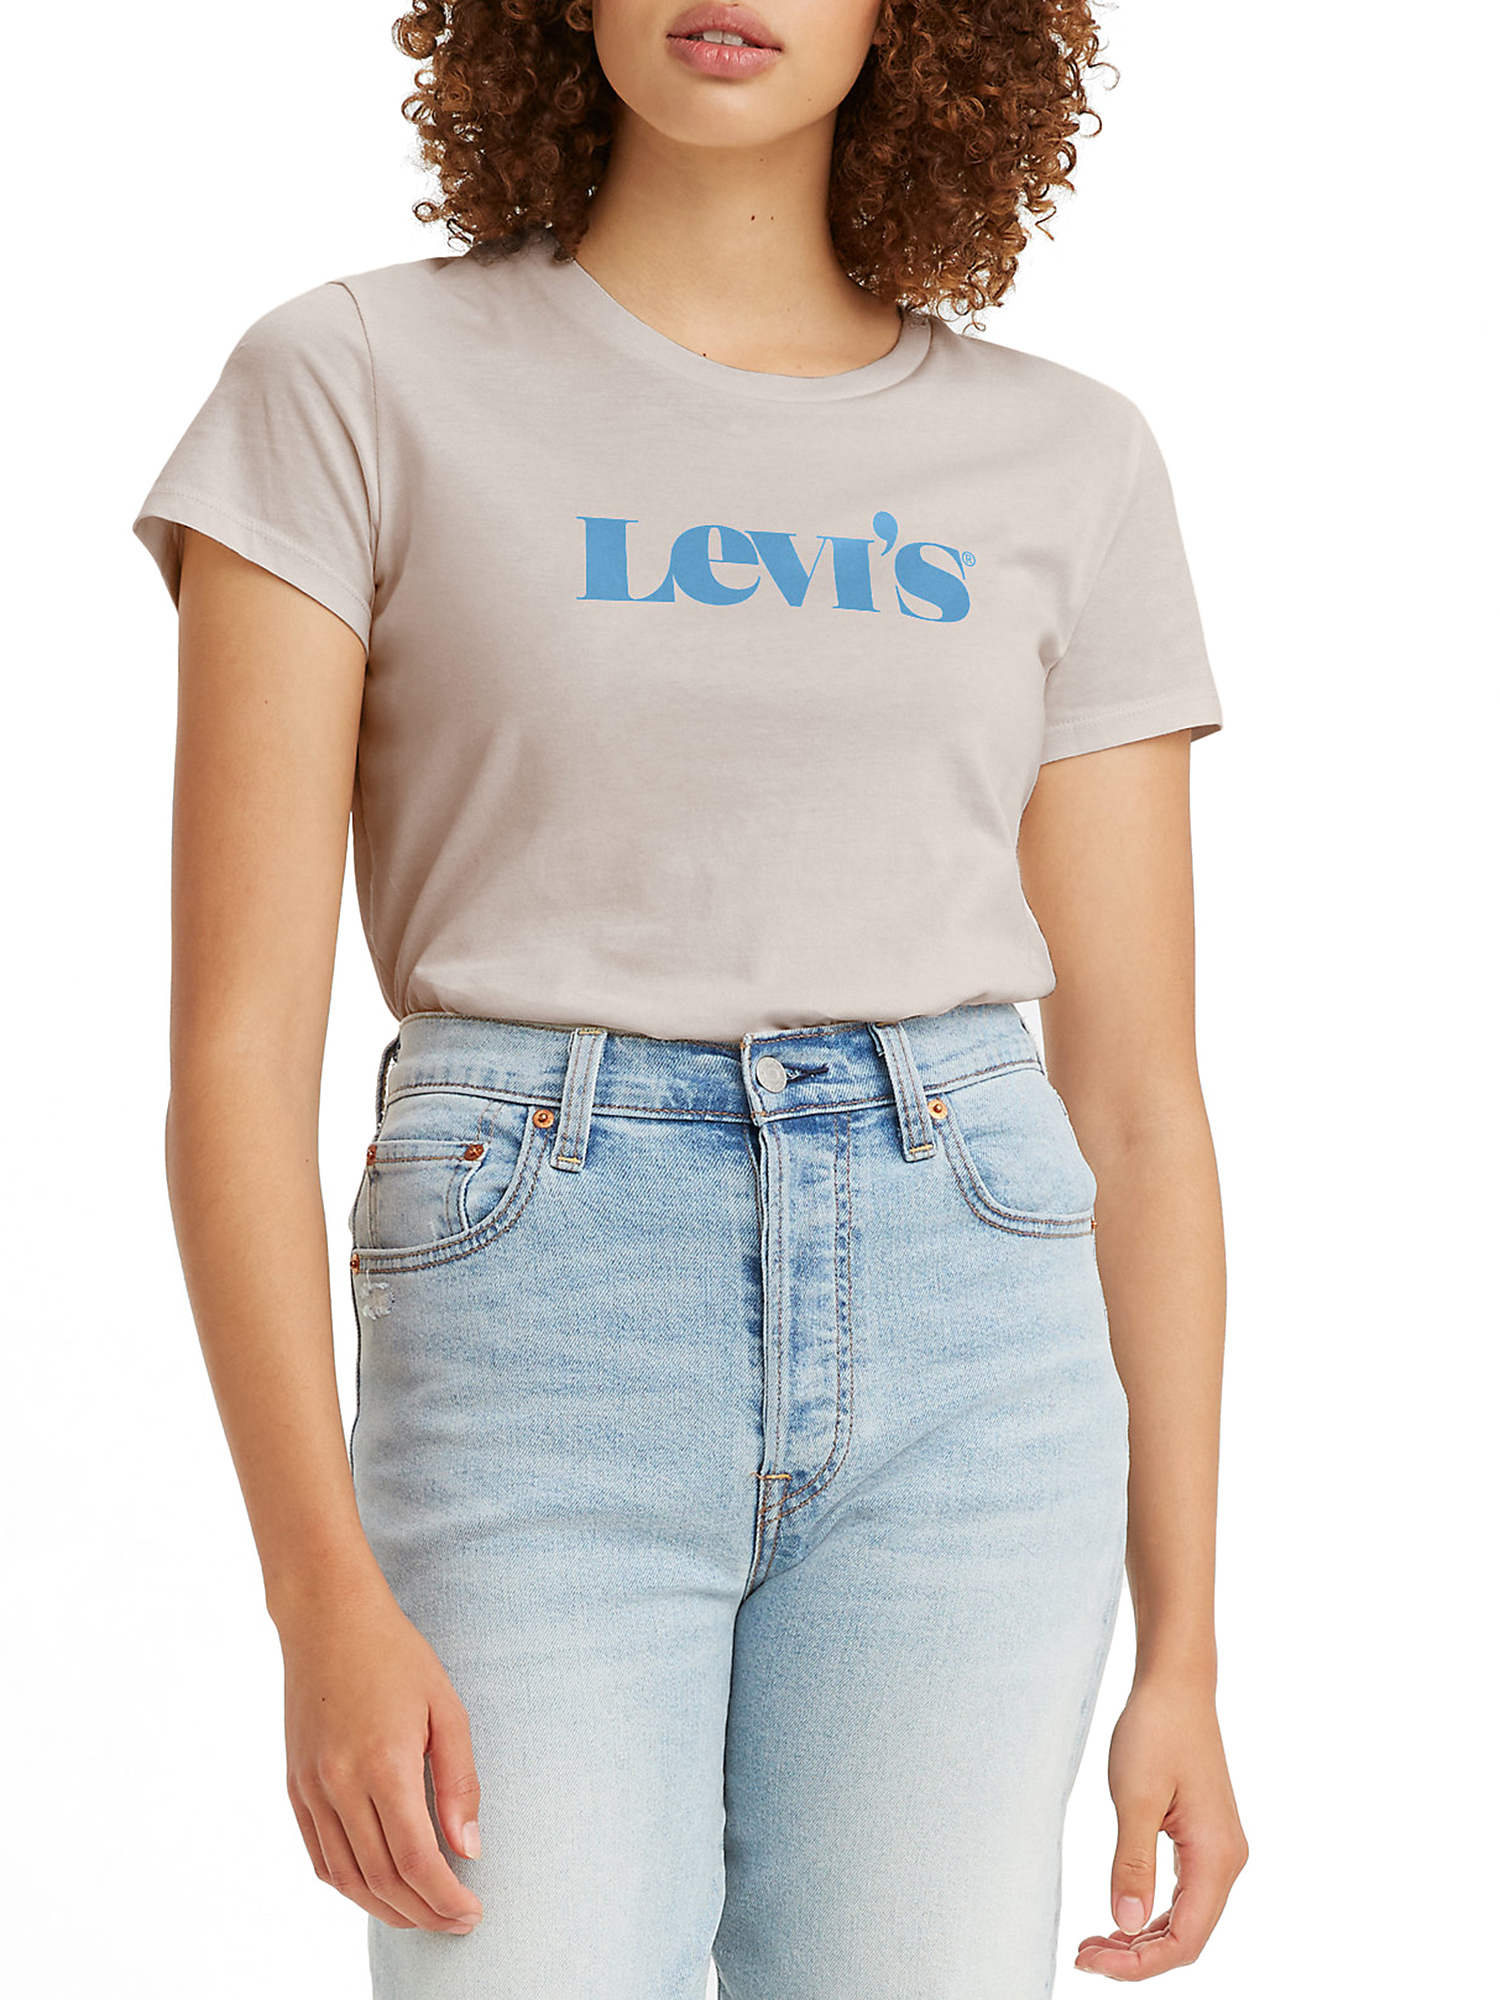 Leviâs Women's Logo Perfect T-Shirt - image 1 of 4